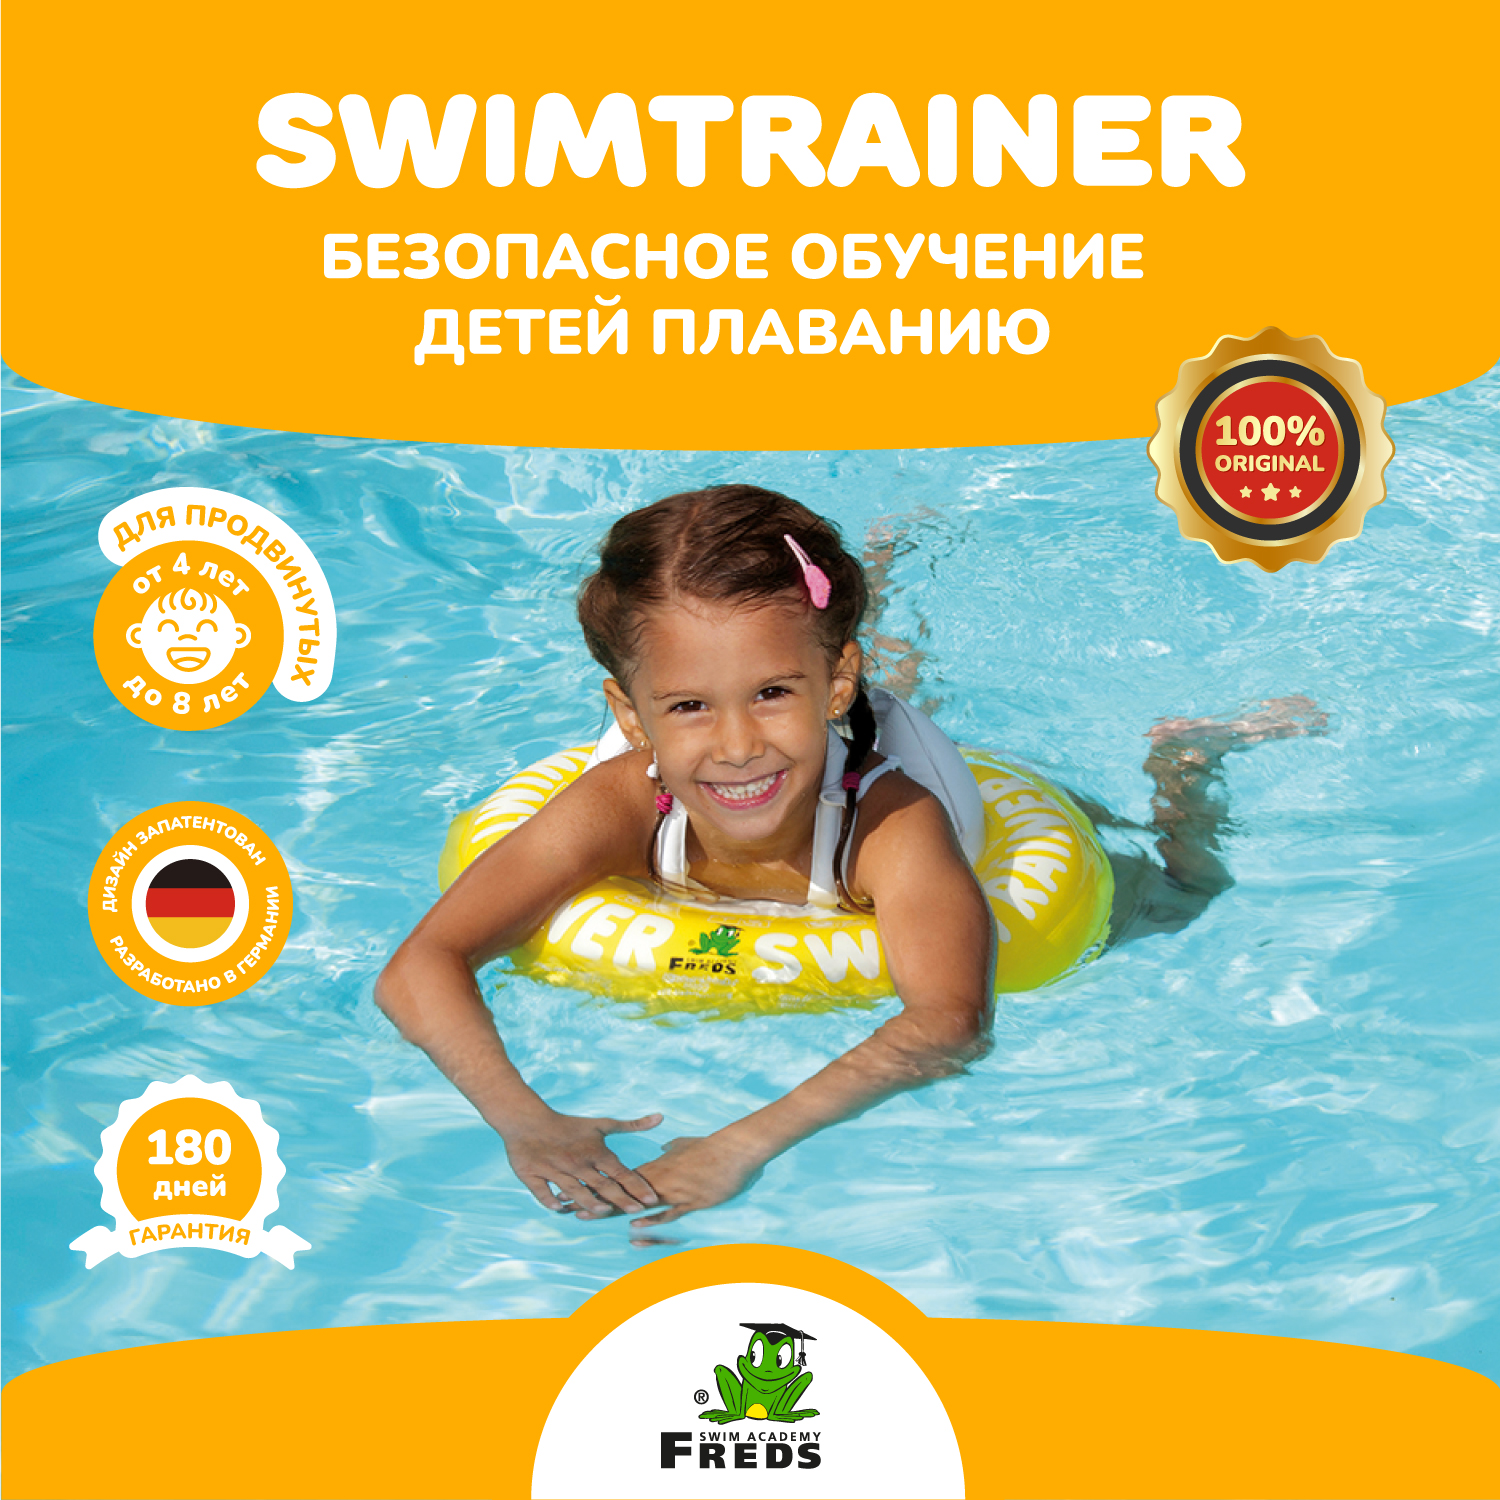 Круг надувной Freds Swim Academy Swimtrainer «Сlassic» для обучения плаванию (4-8лет) Желтый - фото 1